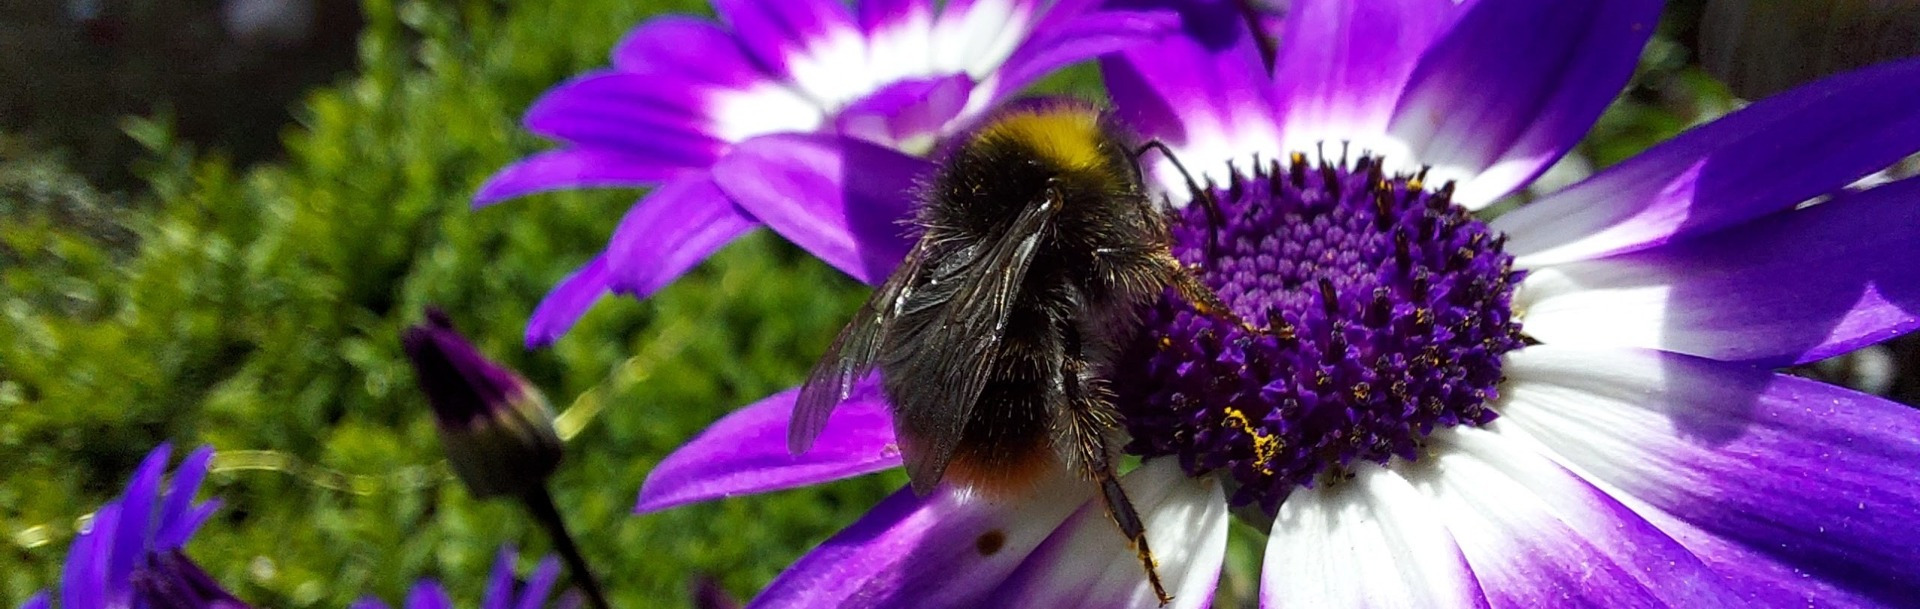 Bee on violet flower